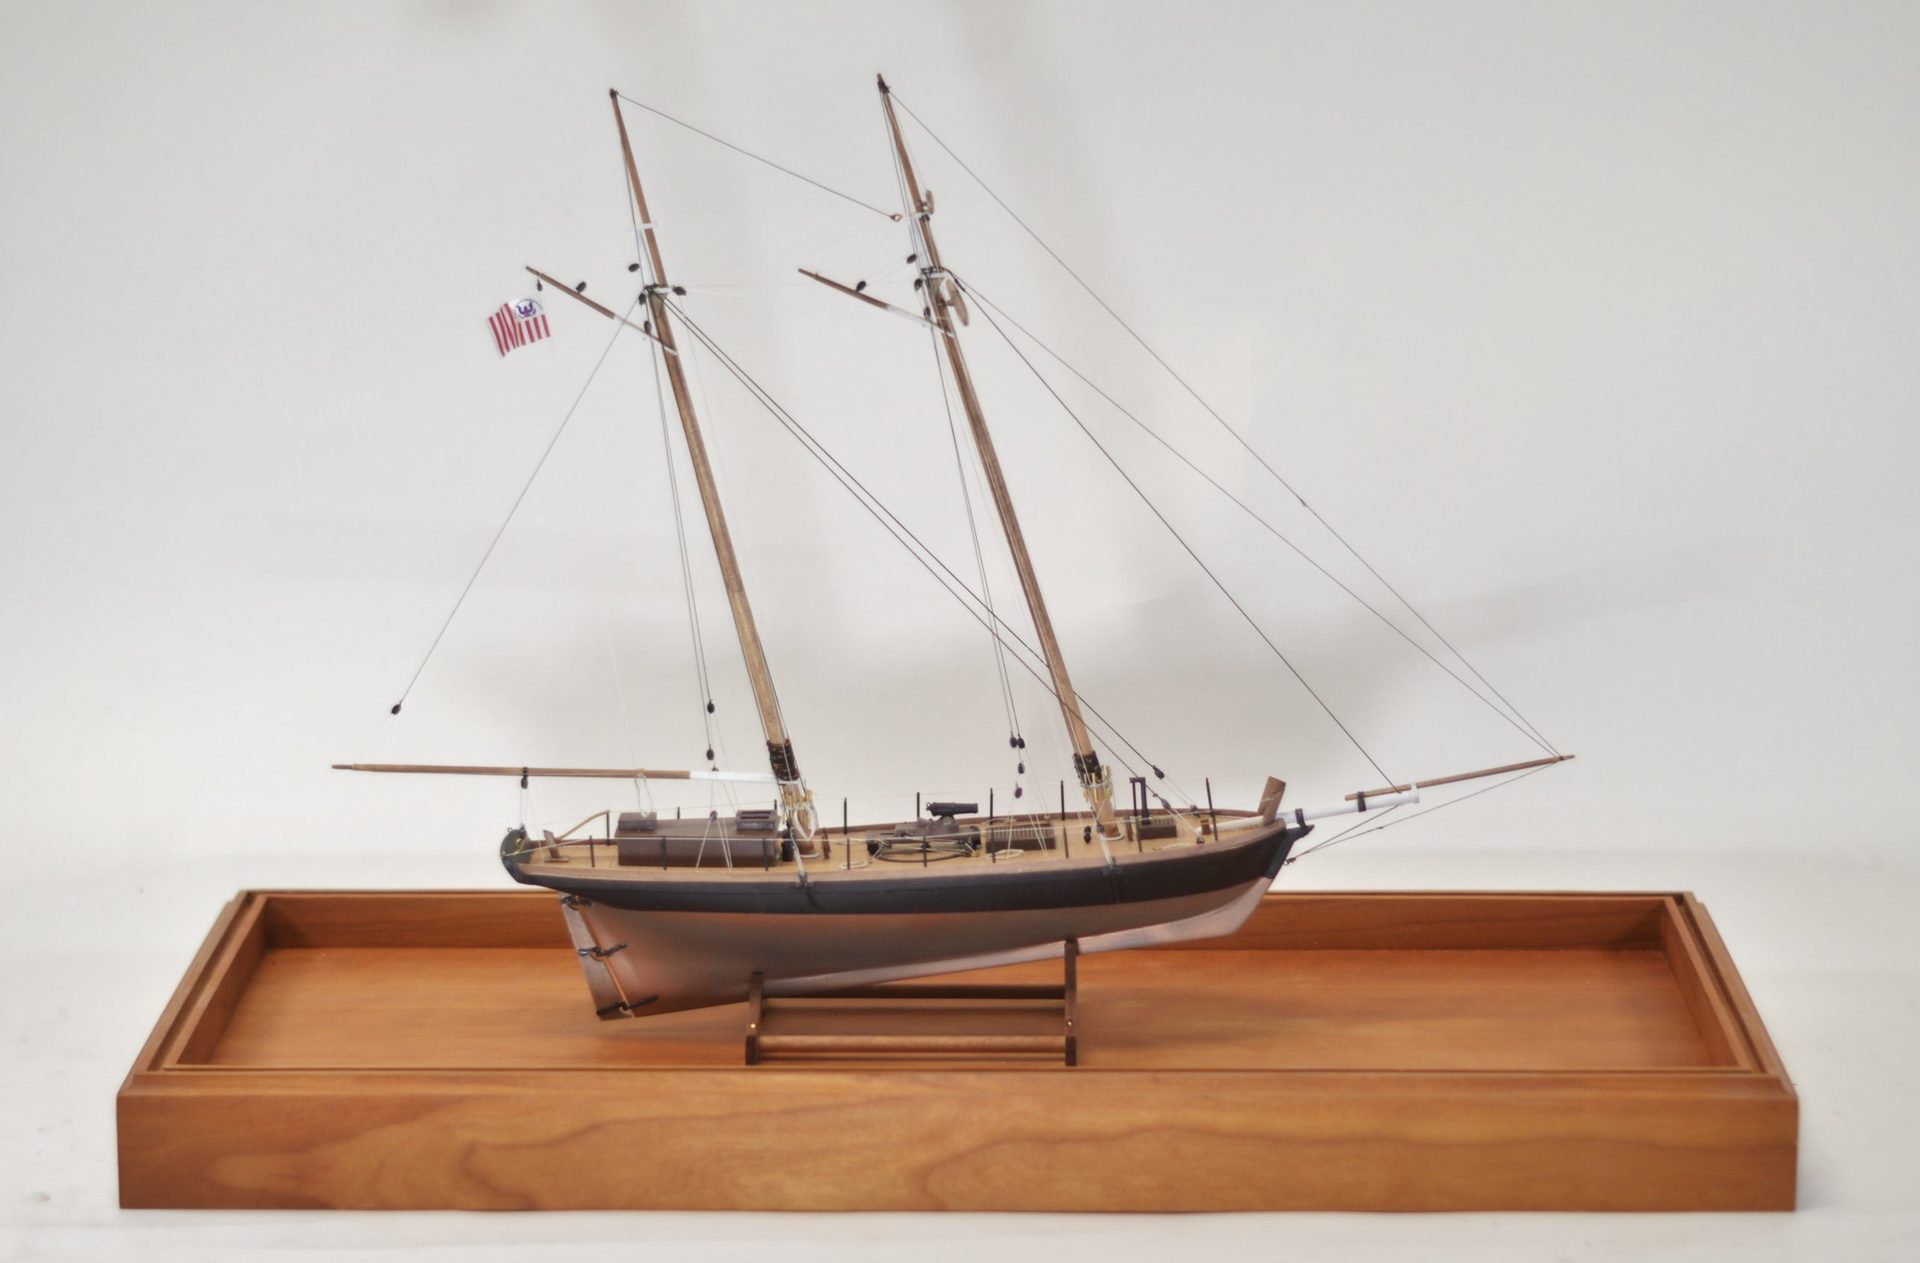 Model Kits - Boats and Ships - Wood Kits - Kits